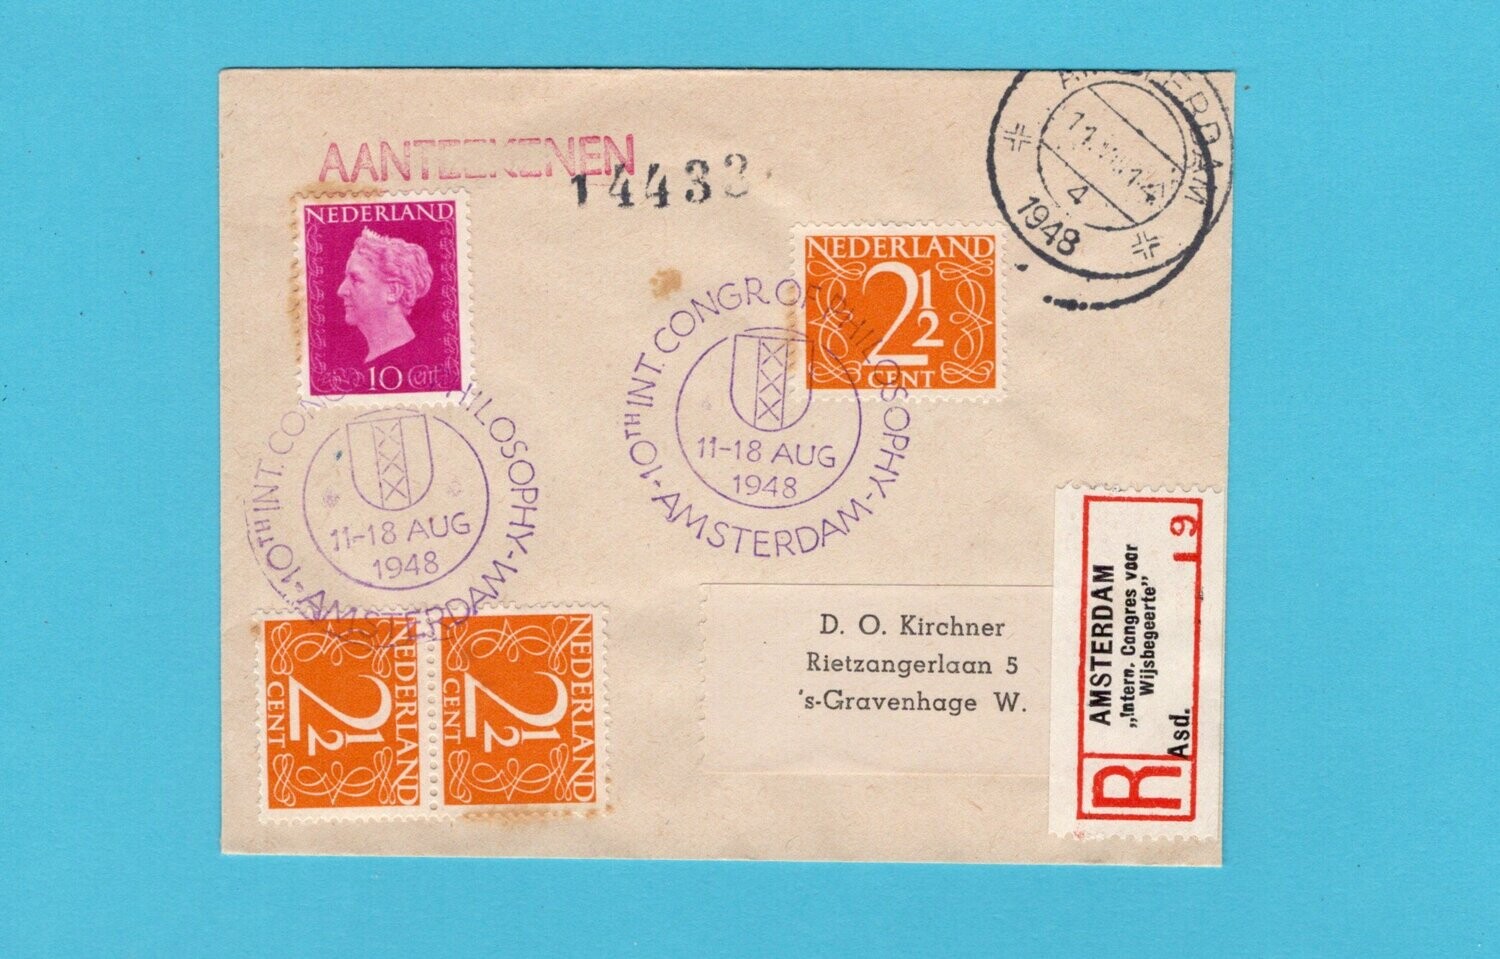 NEDERLAND R brief Congres Wijsbegeerte 1948 Amsterdam